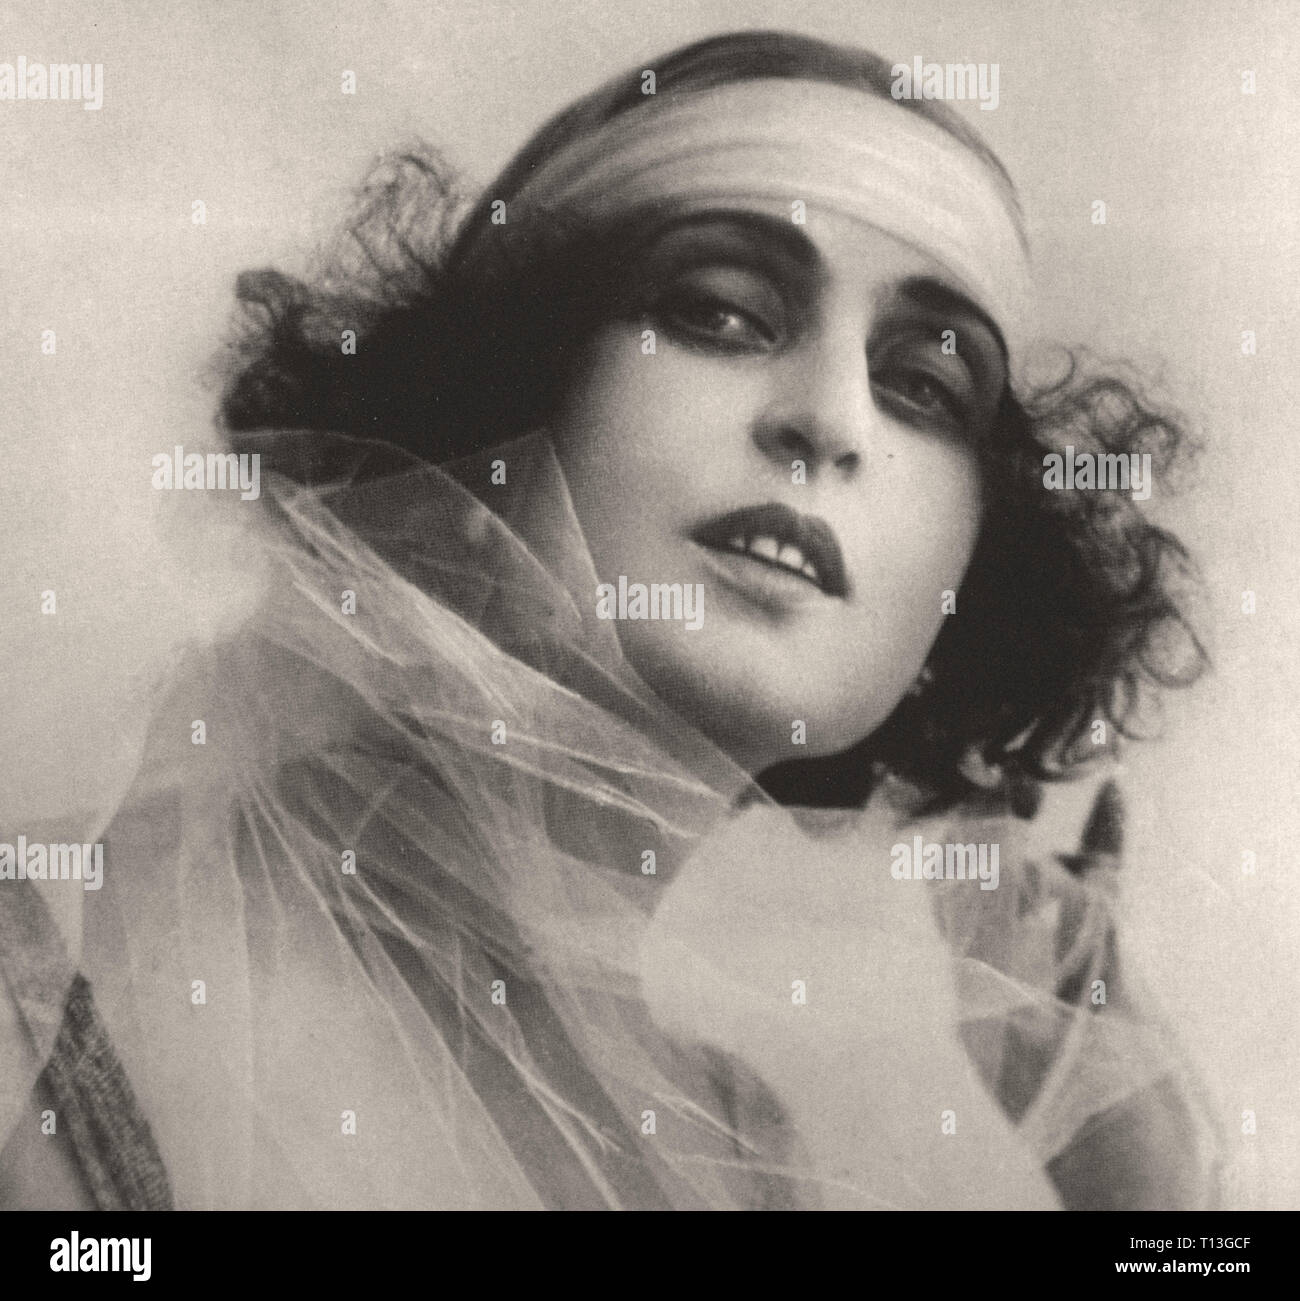 Fotografía promocional del cine mudo italiano Diva - Pina Menichelli -  época del cine mudo Fotografía de stock - Alamy